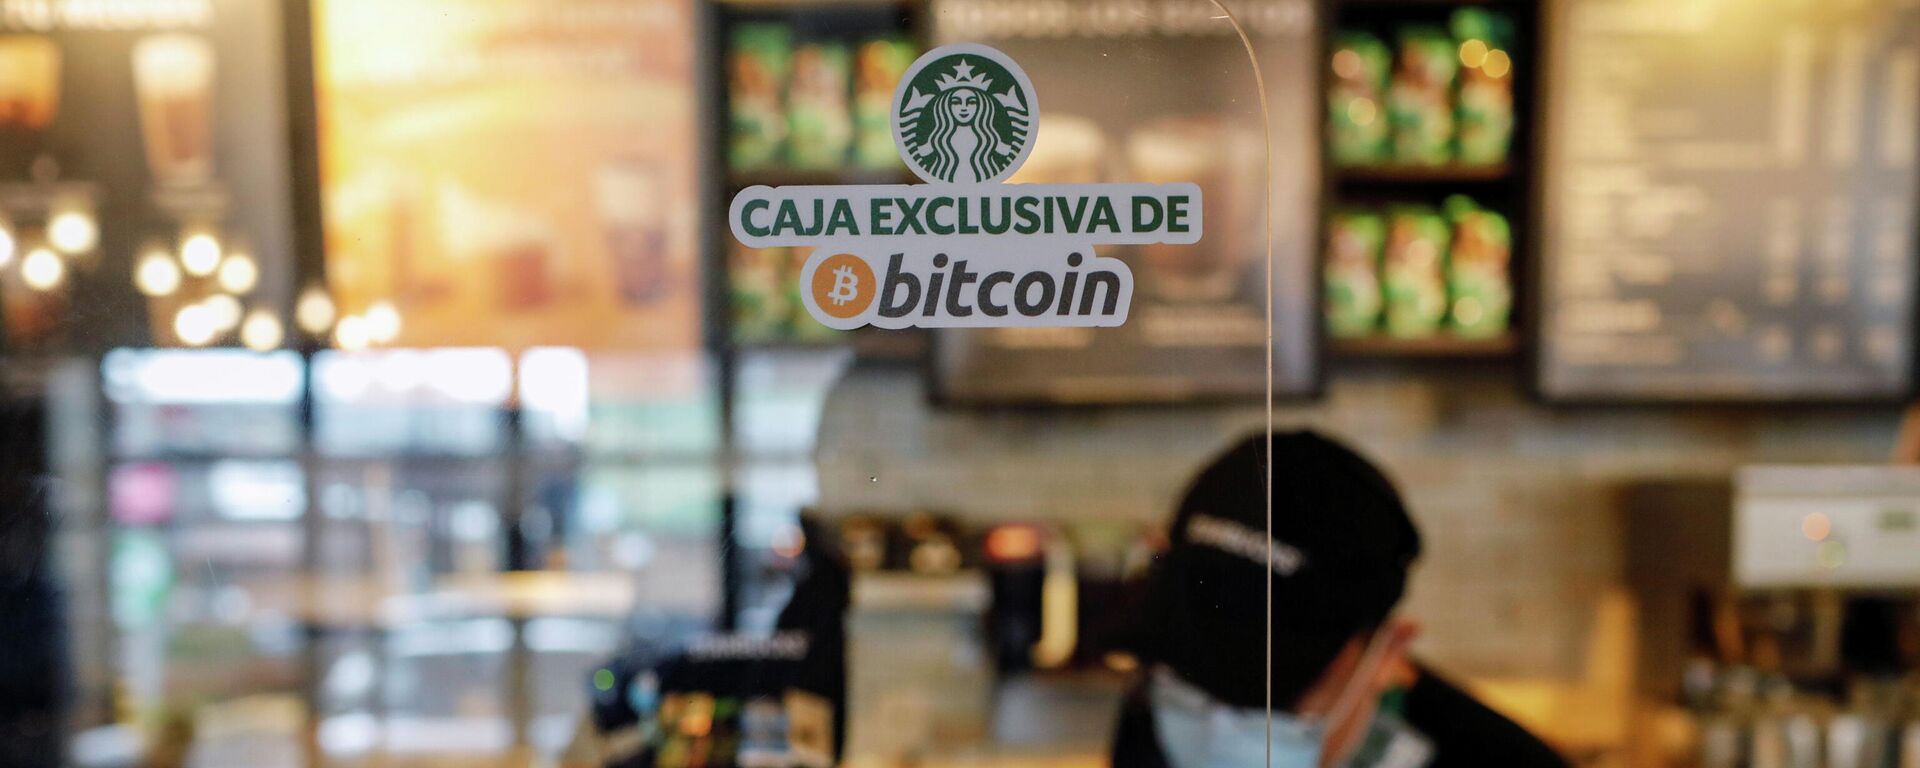 Una caja exclusiva para bitcóin en la cadena de cafeterías Starbucks en El Salvador - Sputnik Mundo, 1920, 14.09.2021